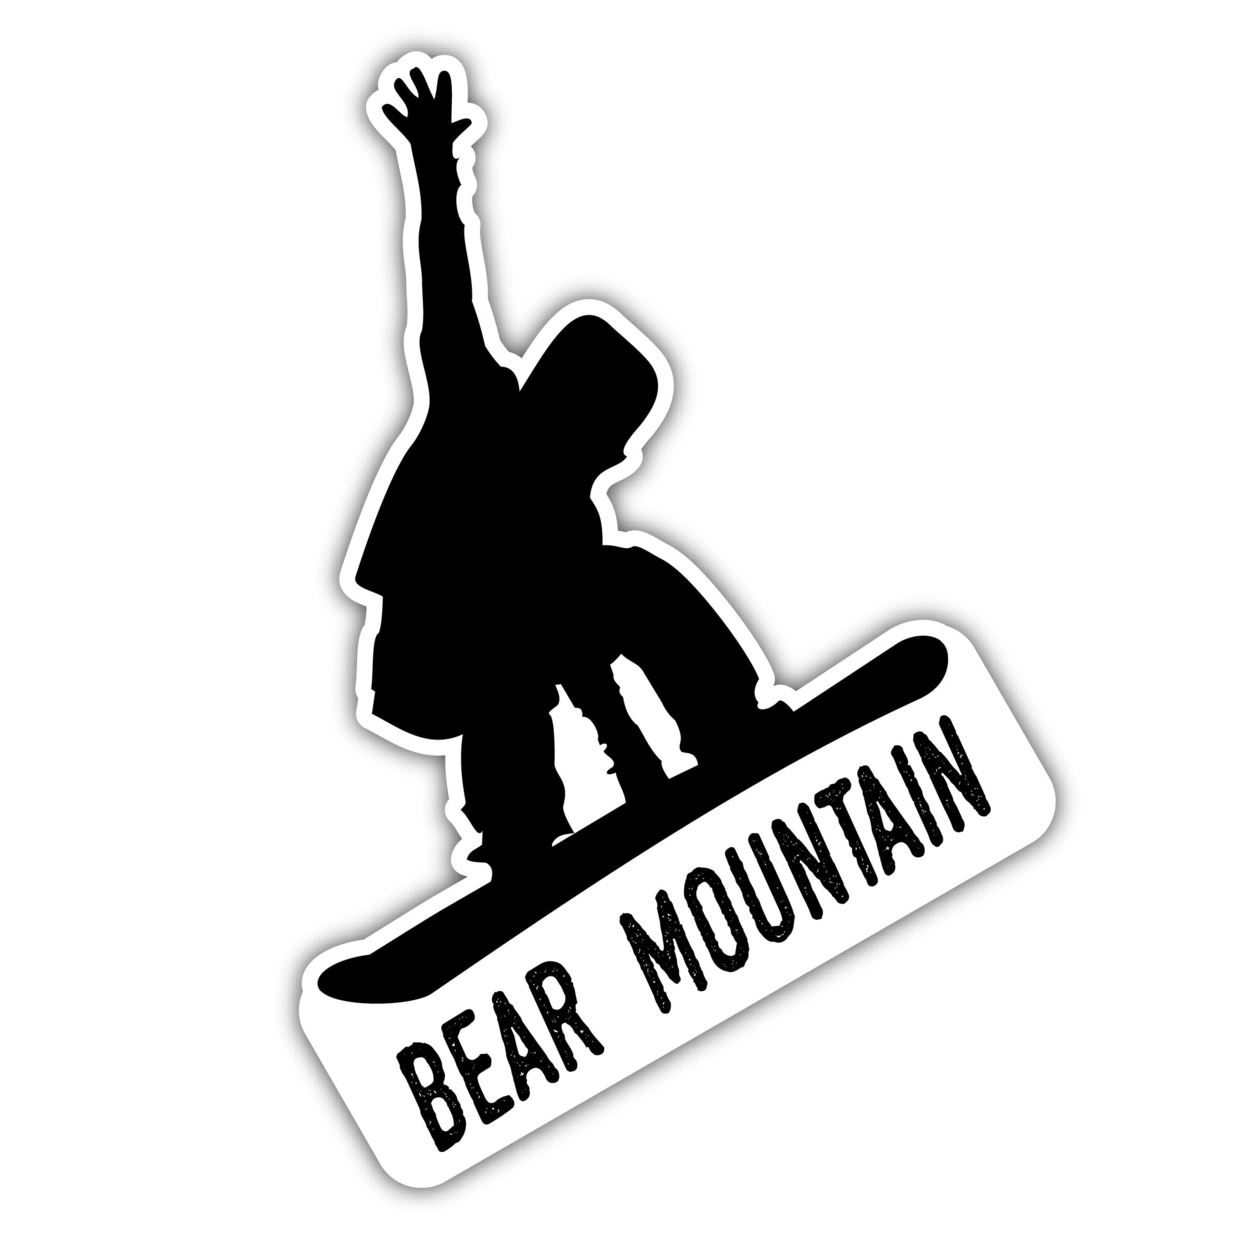 Bear Mountain California Ski Adventures Souvenir Approximately 5 X 2.5-Inch Vinyl Decal Sticker Goggle Design